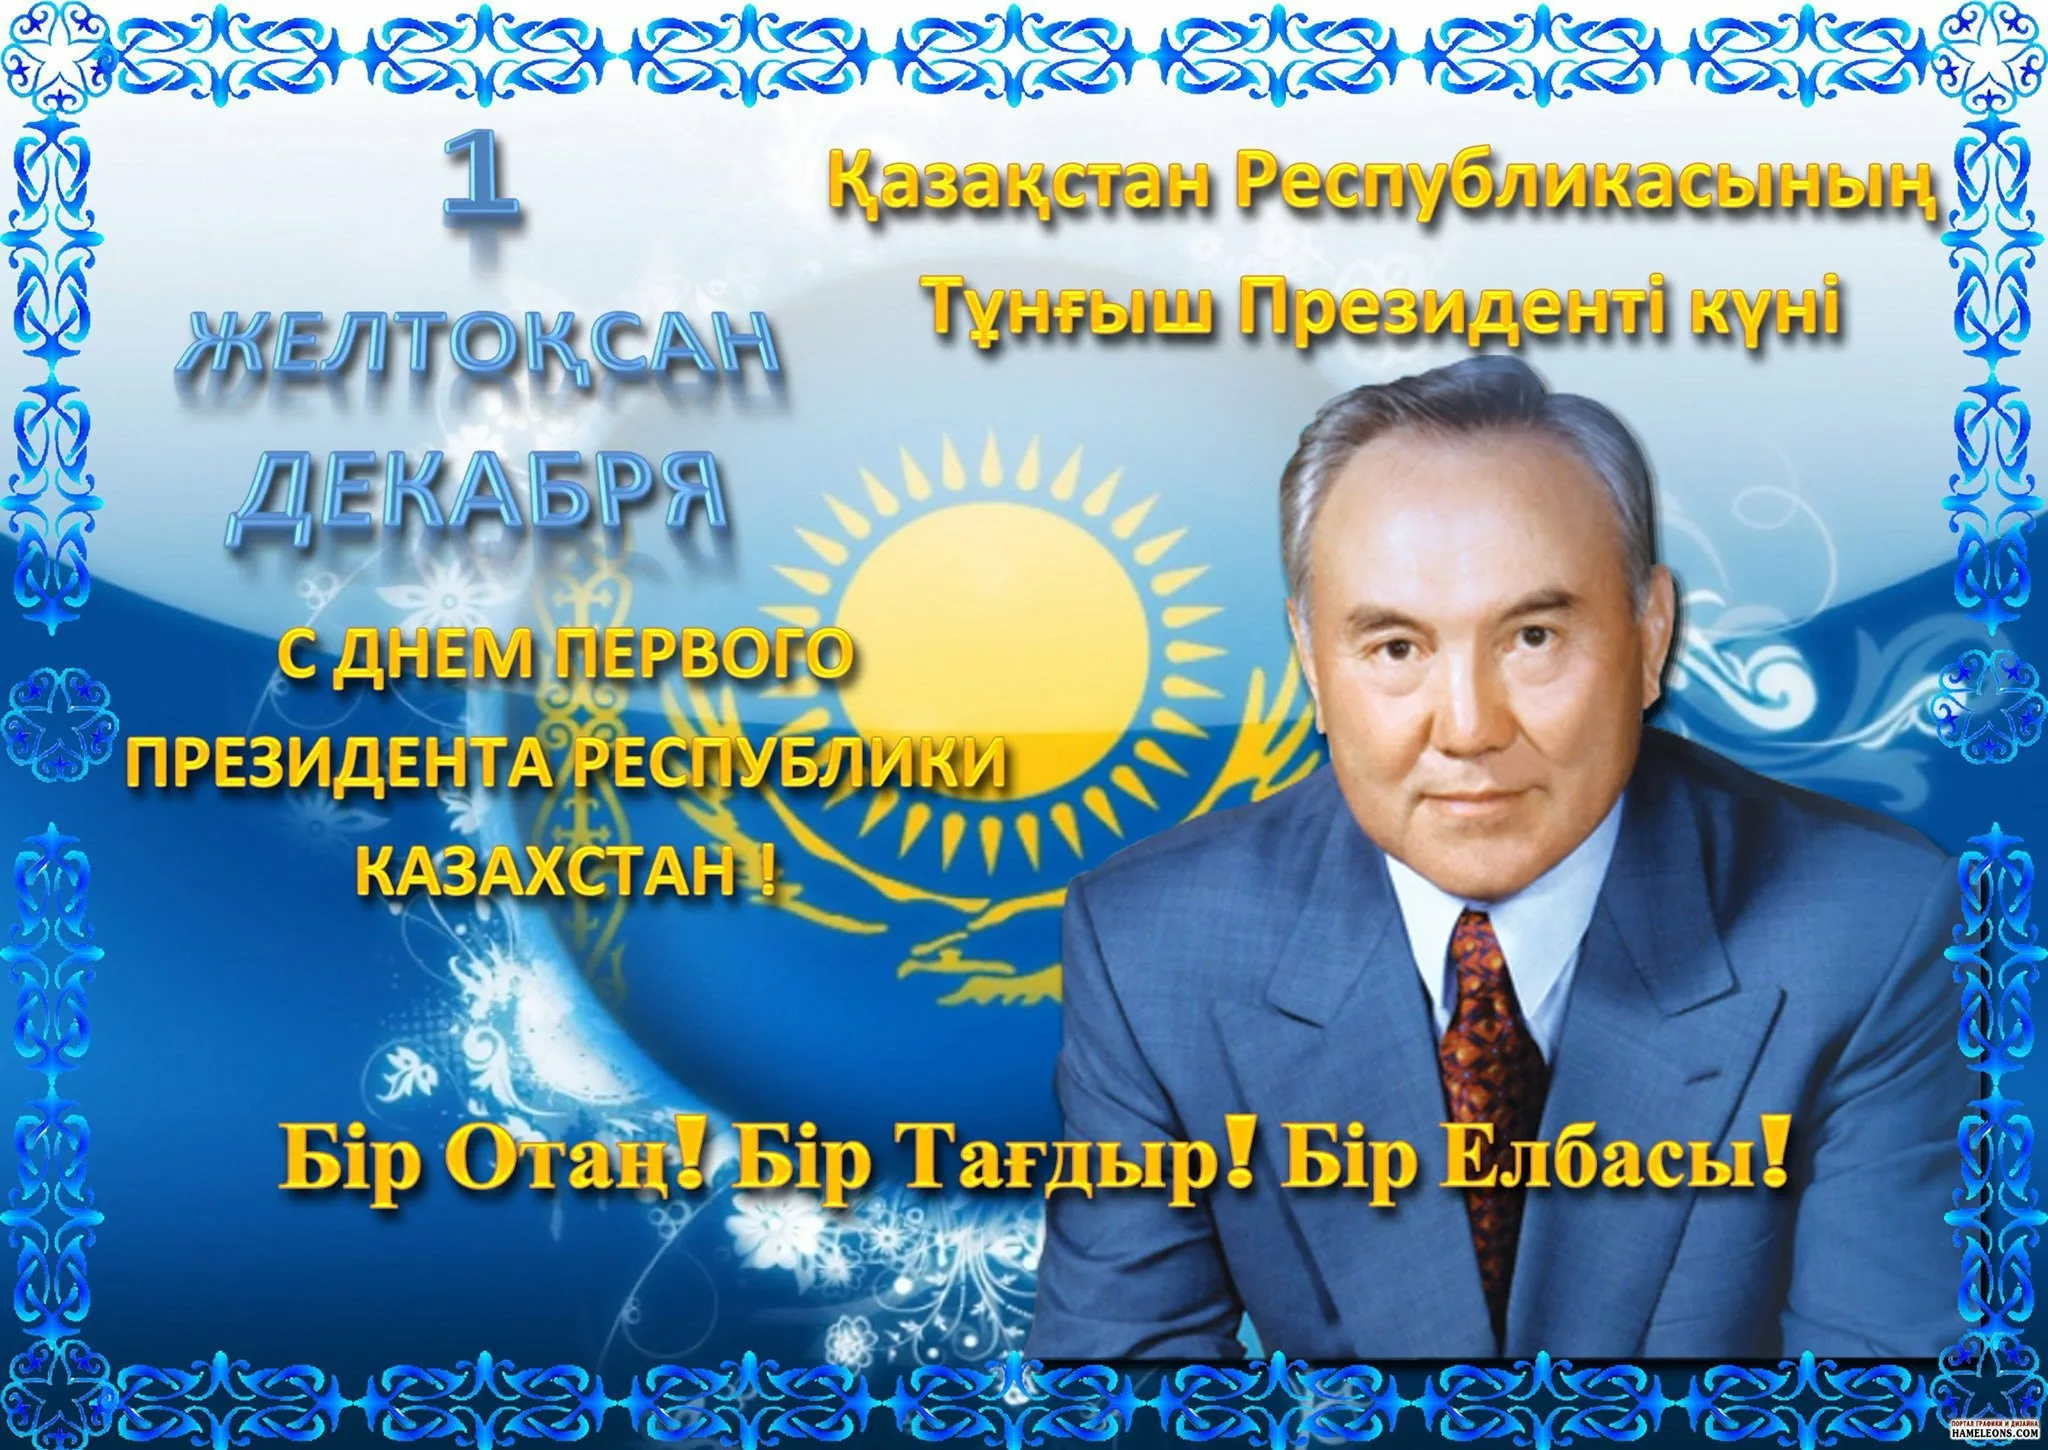 Фото Поздравления с днем рождения на казахском языке #38